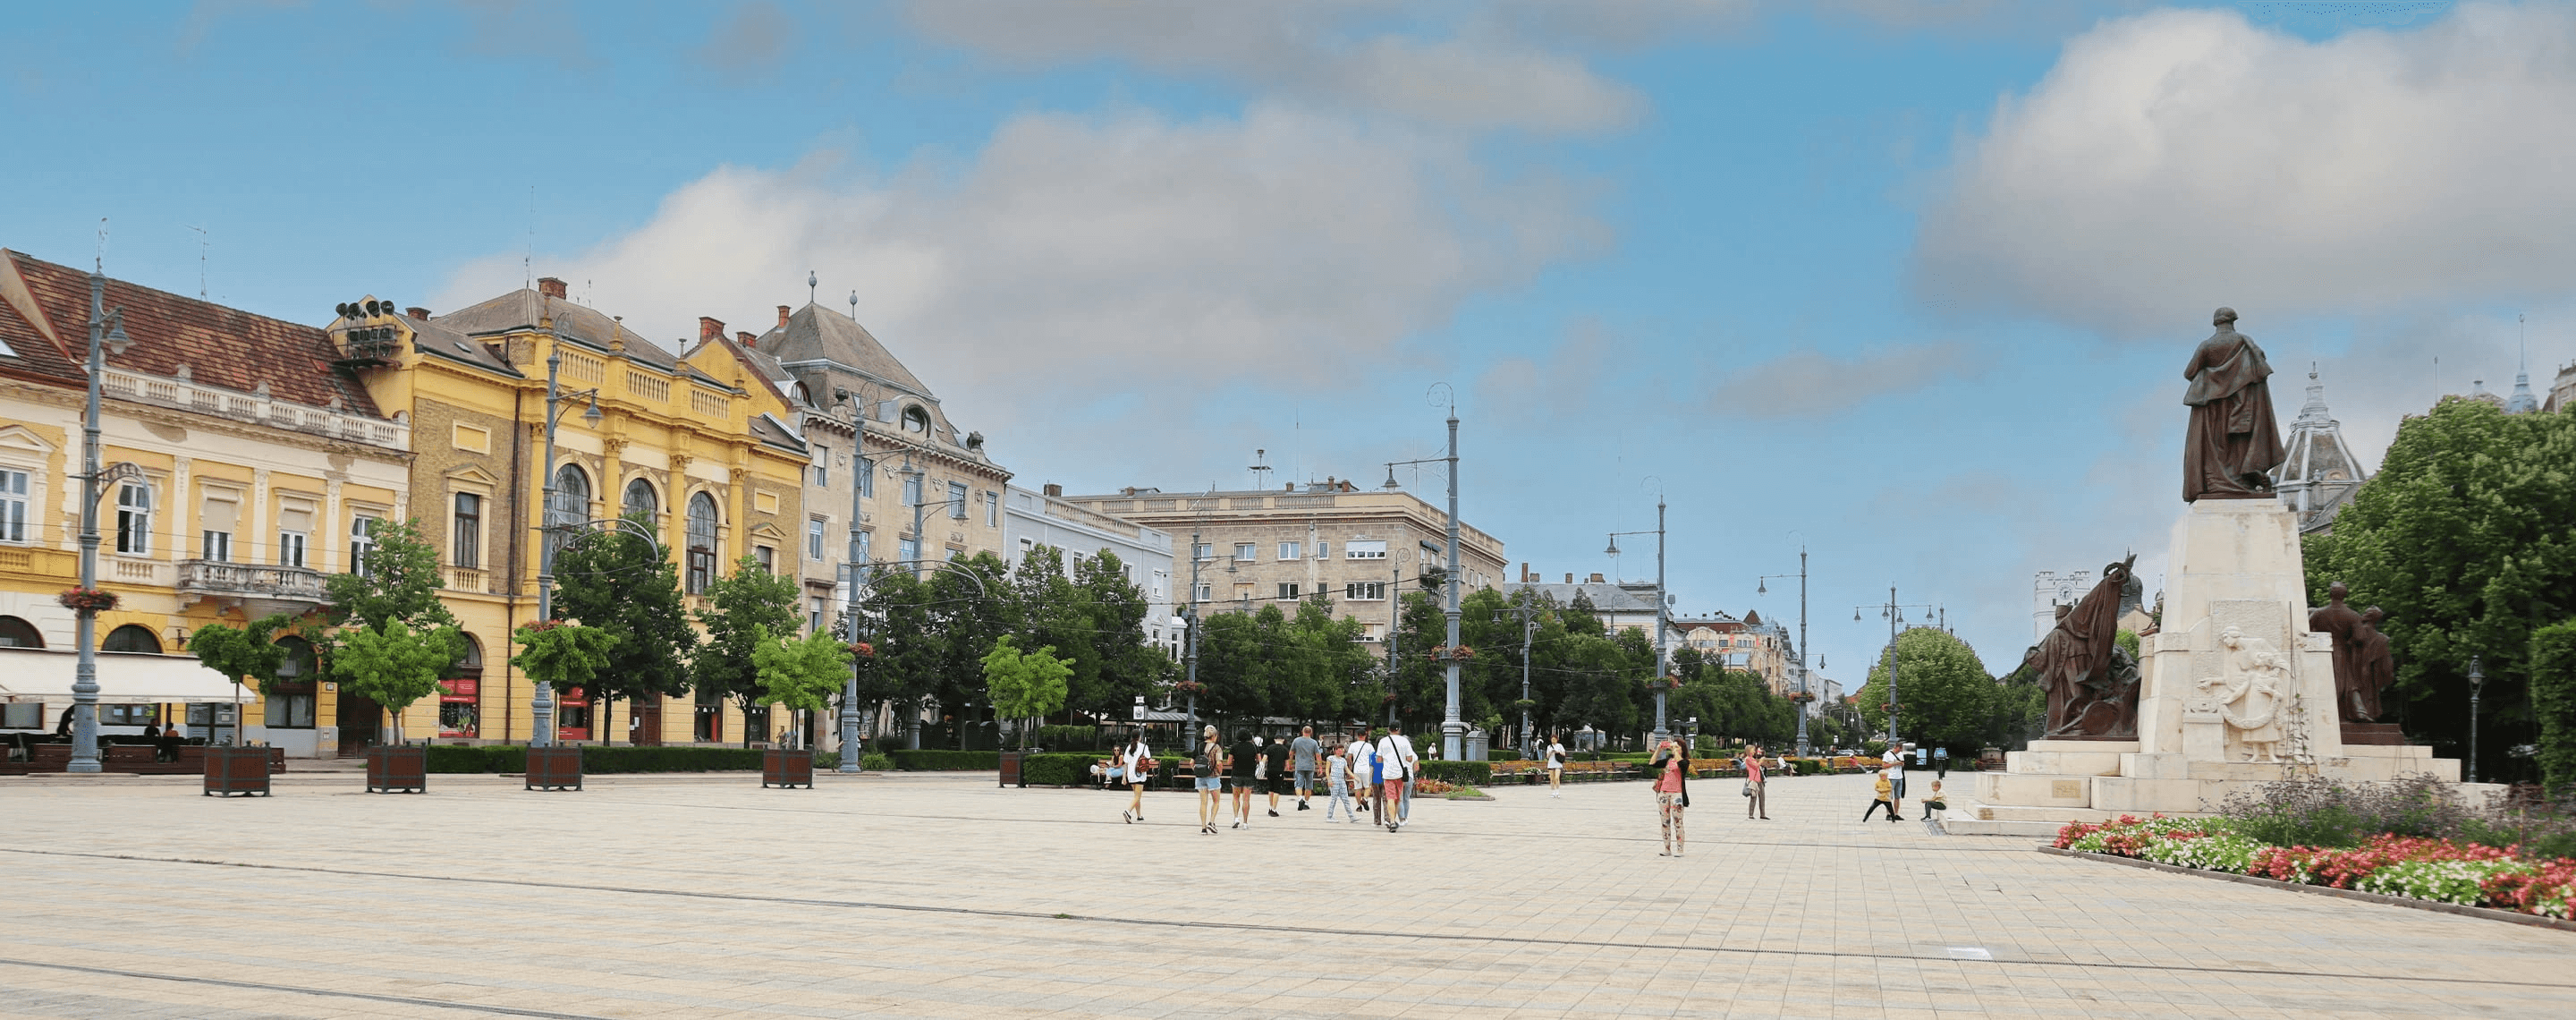 Platz mit Lajos Kossuth Monument in Debrecen, Ungarn